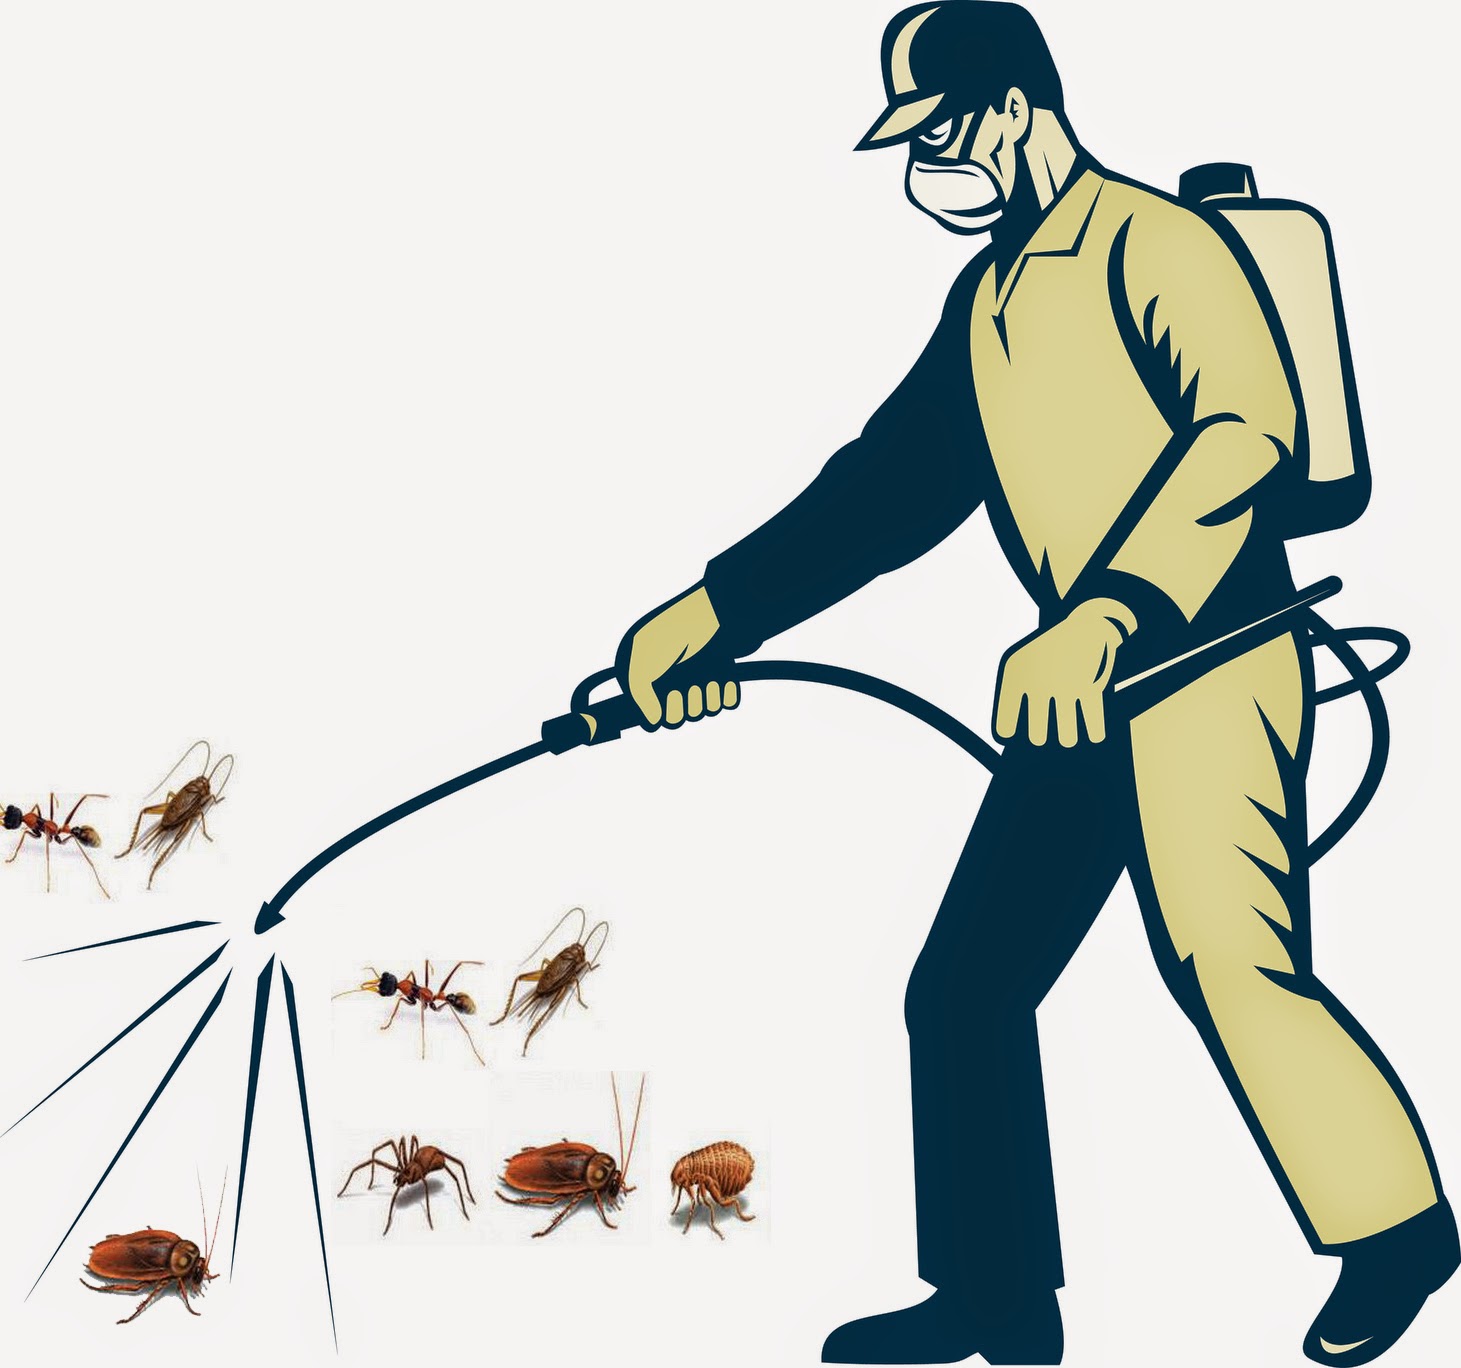 diệt côn trùng Thanh Hoá